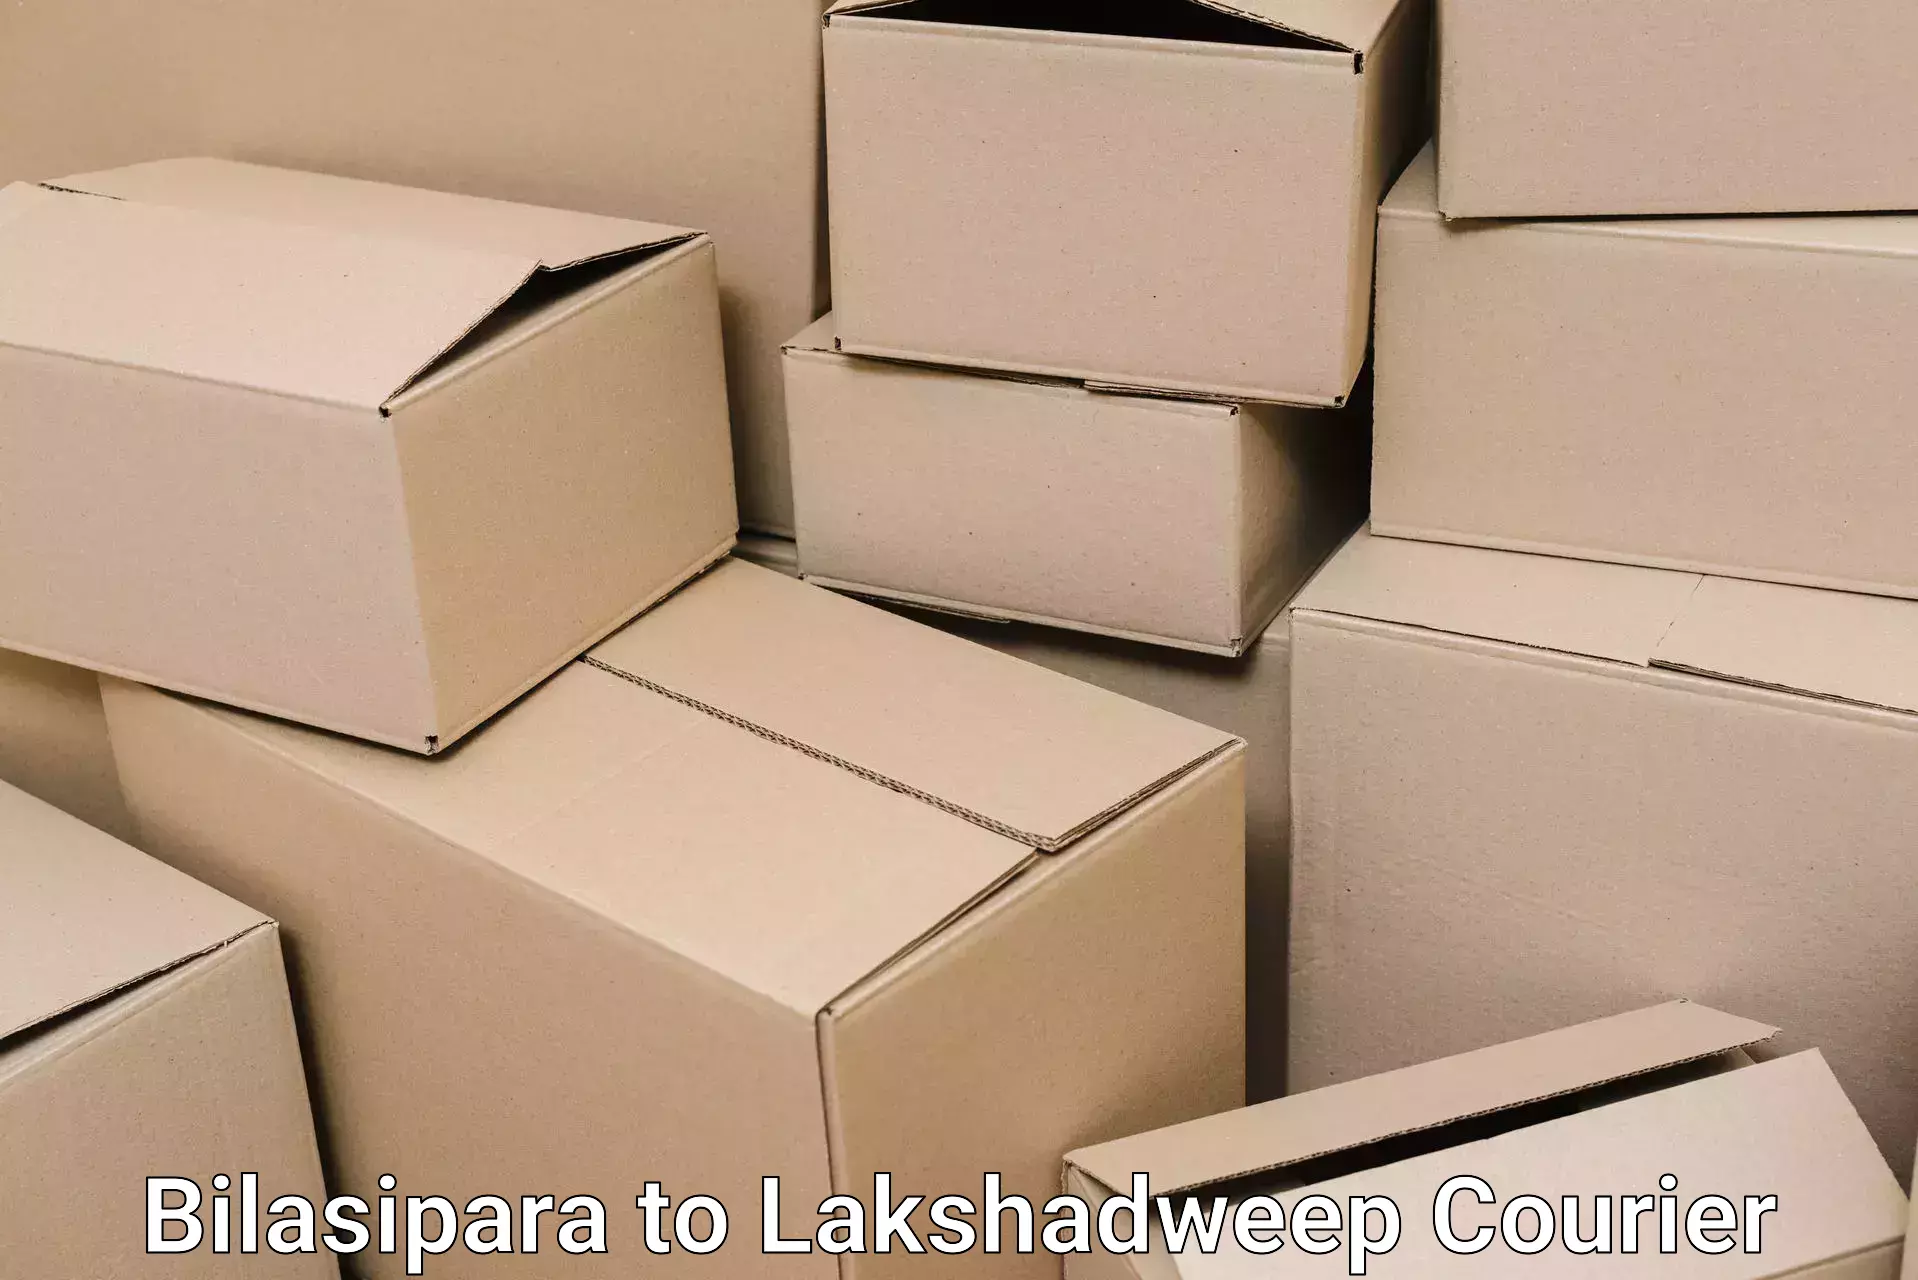 Professional movers Bilasipara to Lakshadweep